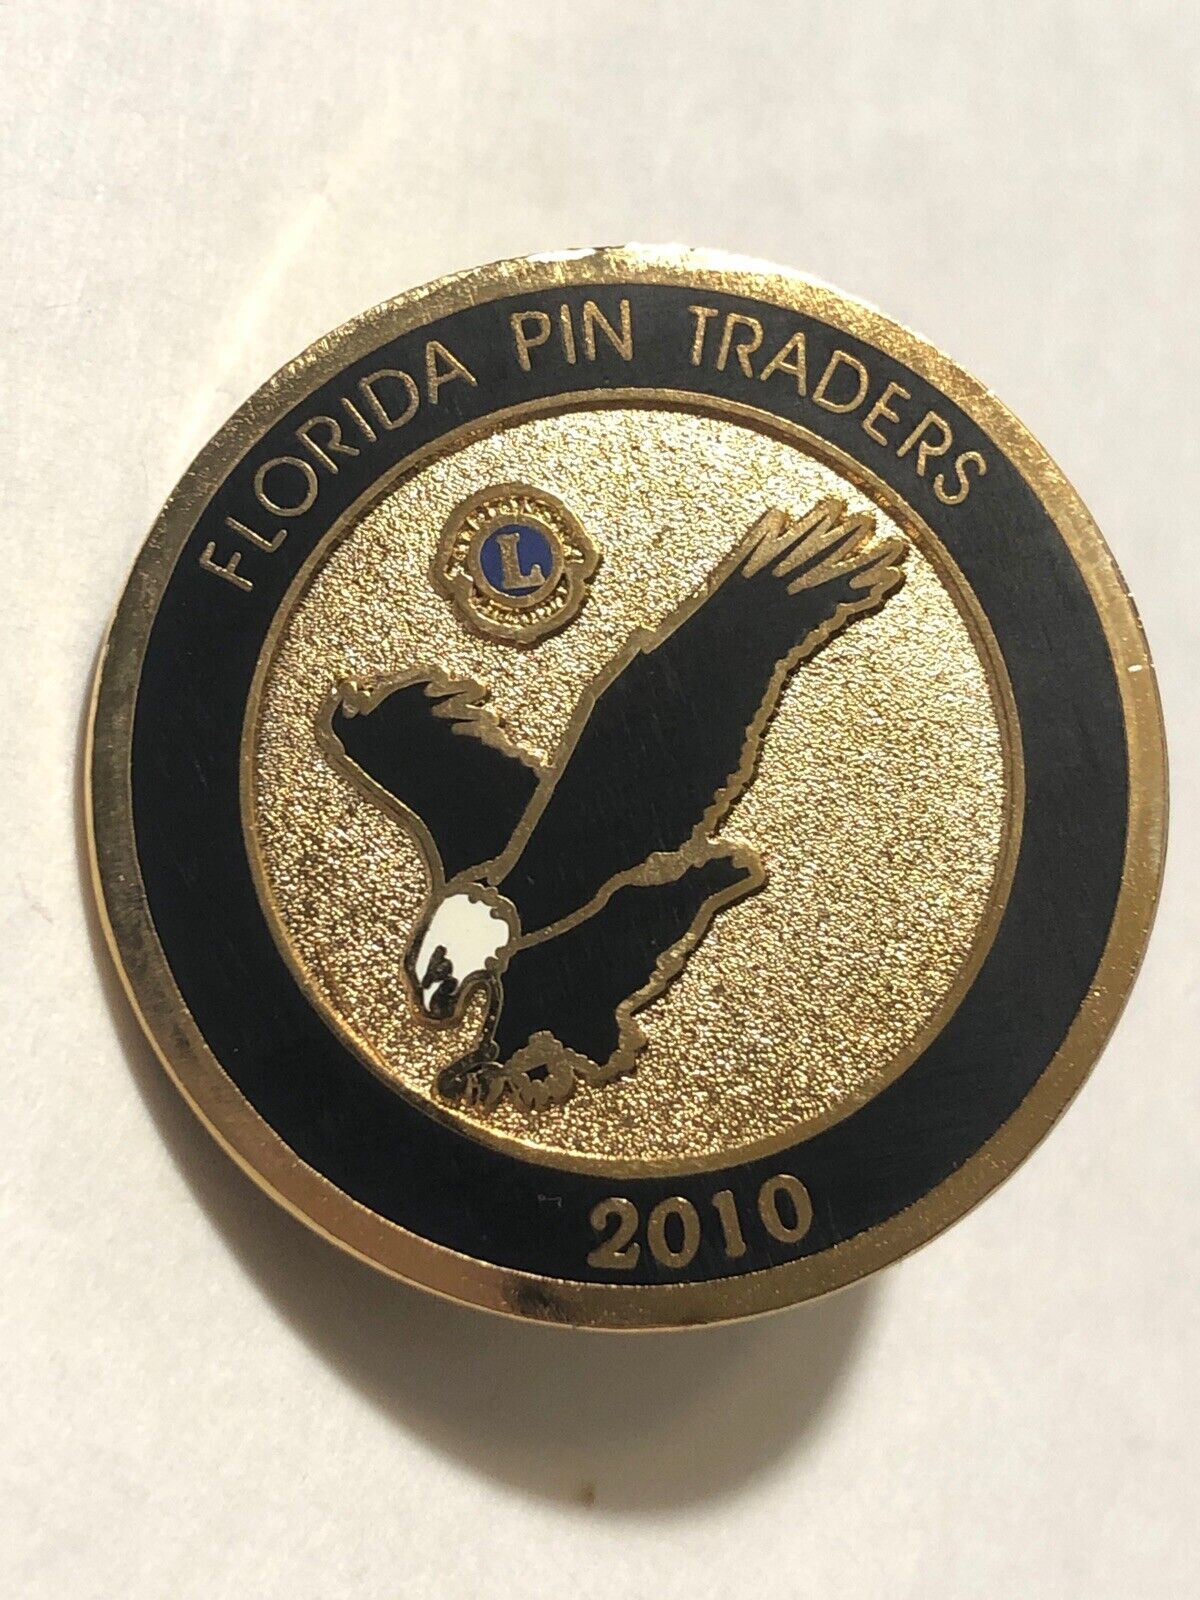 2010 Florida Pin Traders Bald Eagle Lions Club Pin